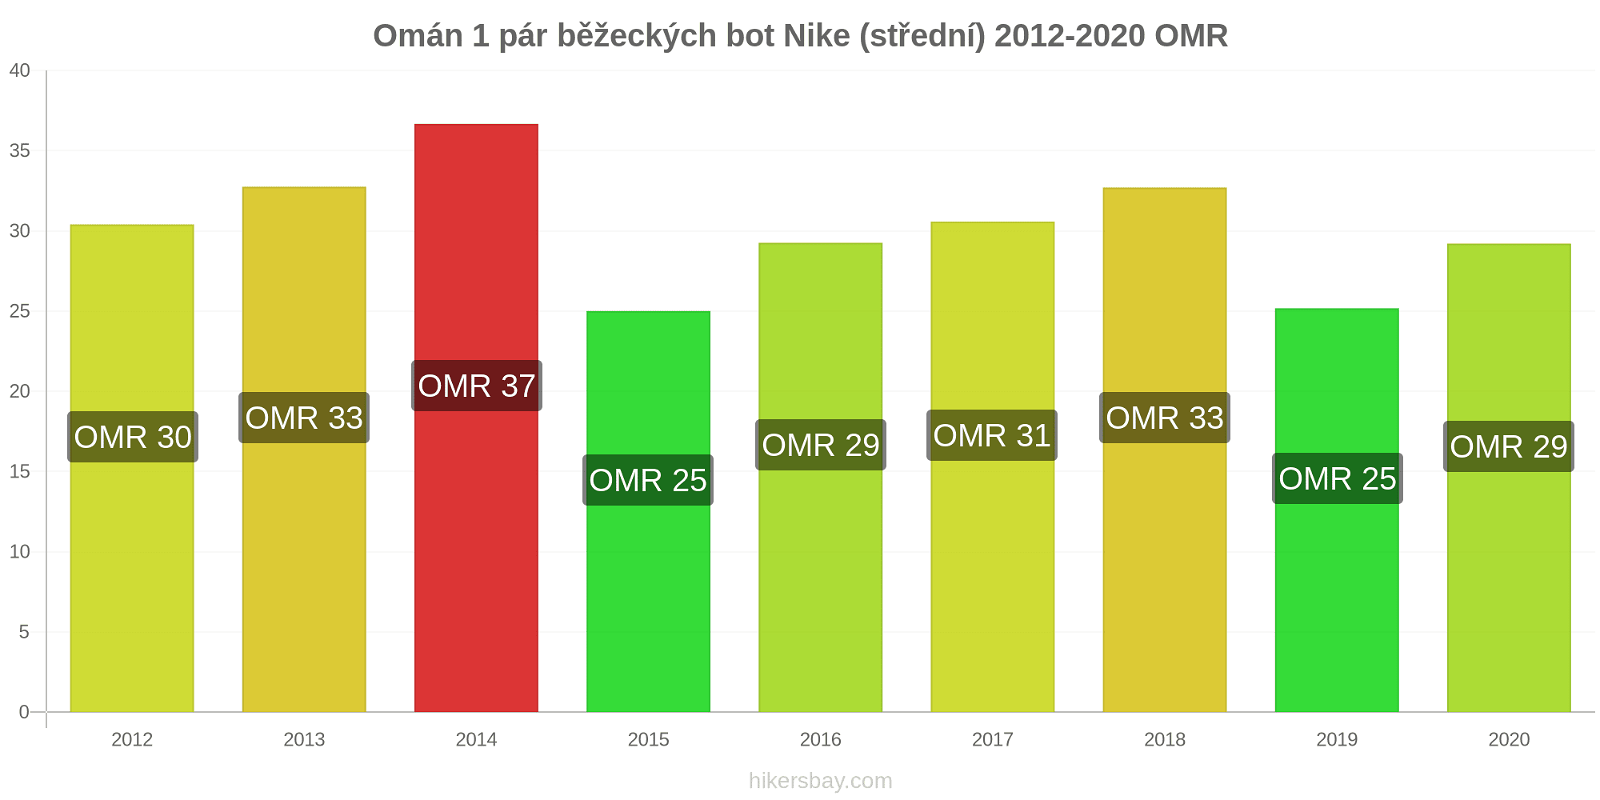 Omán změny cen 1 pár běžeckých bot Nike (střední) hikersbay.com